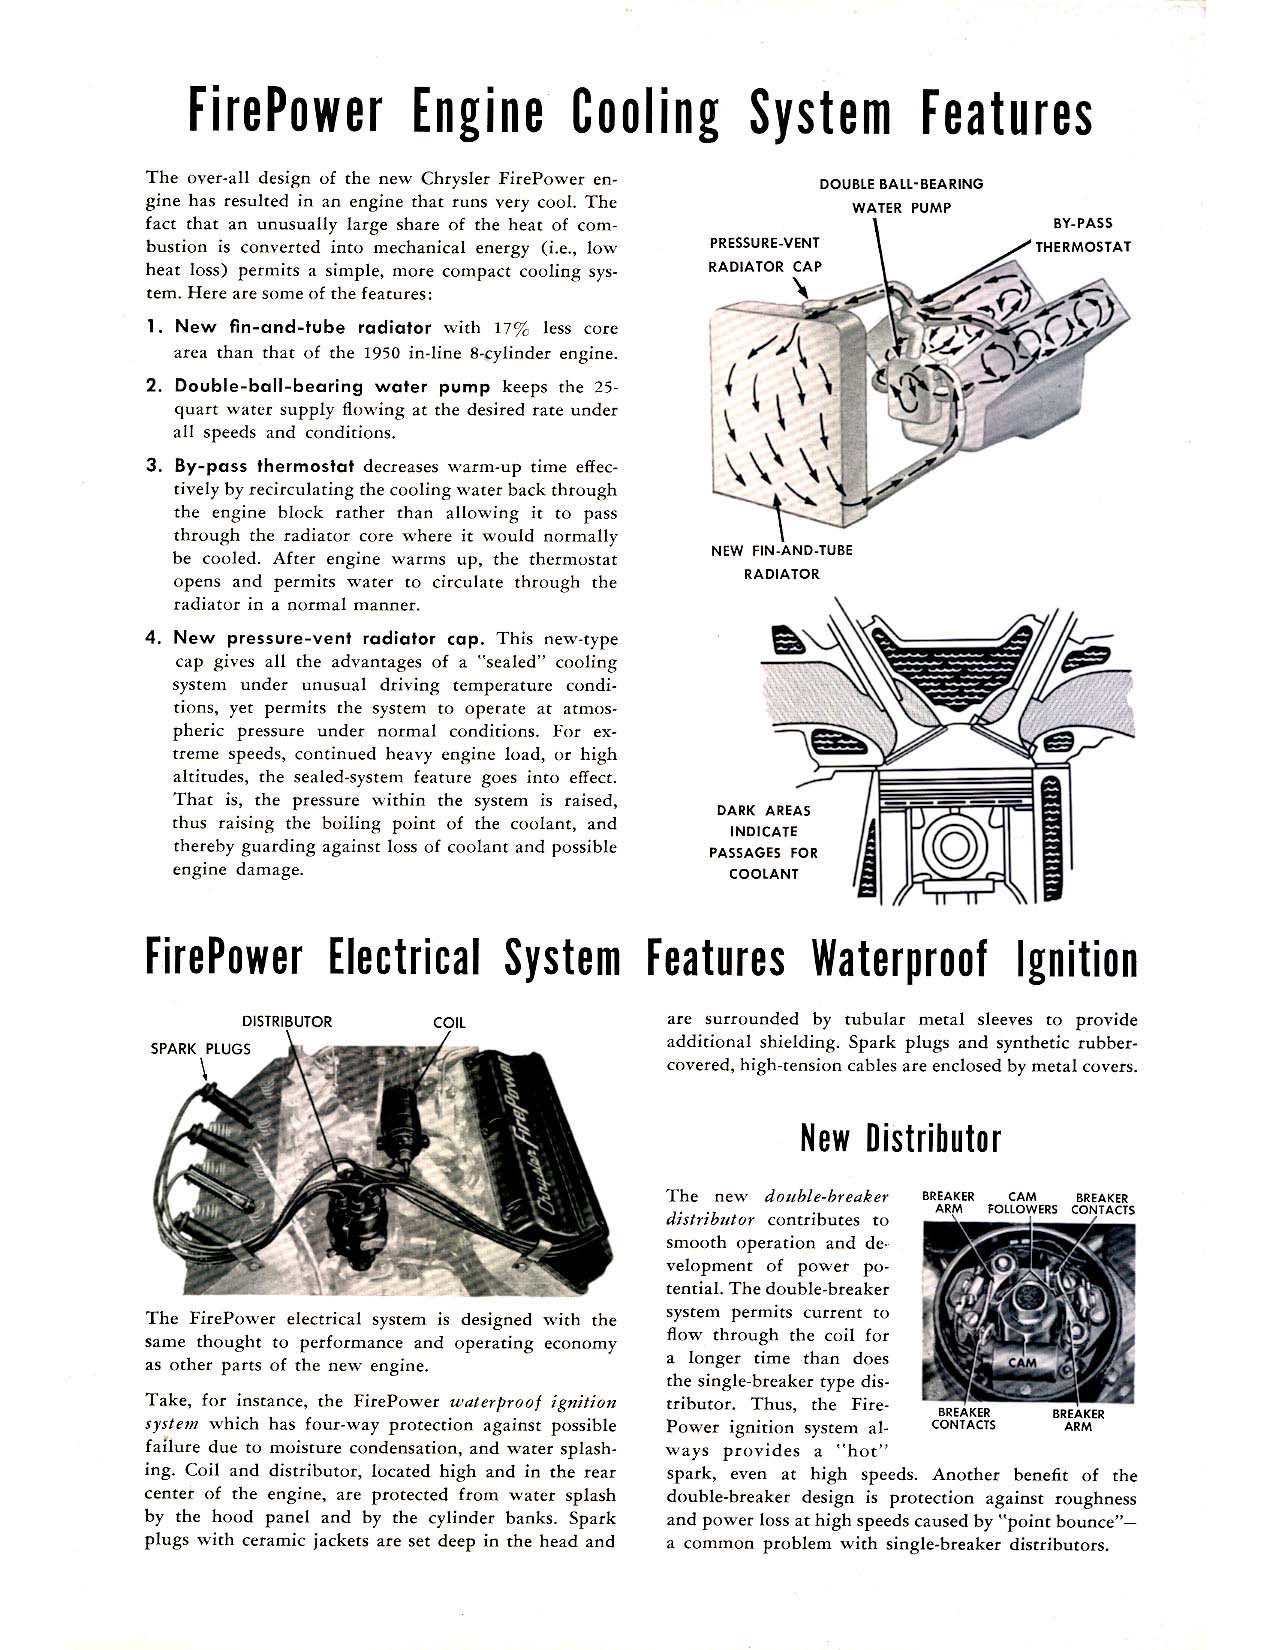 1951_Chrysler_FirePower_Advantages-05